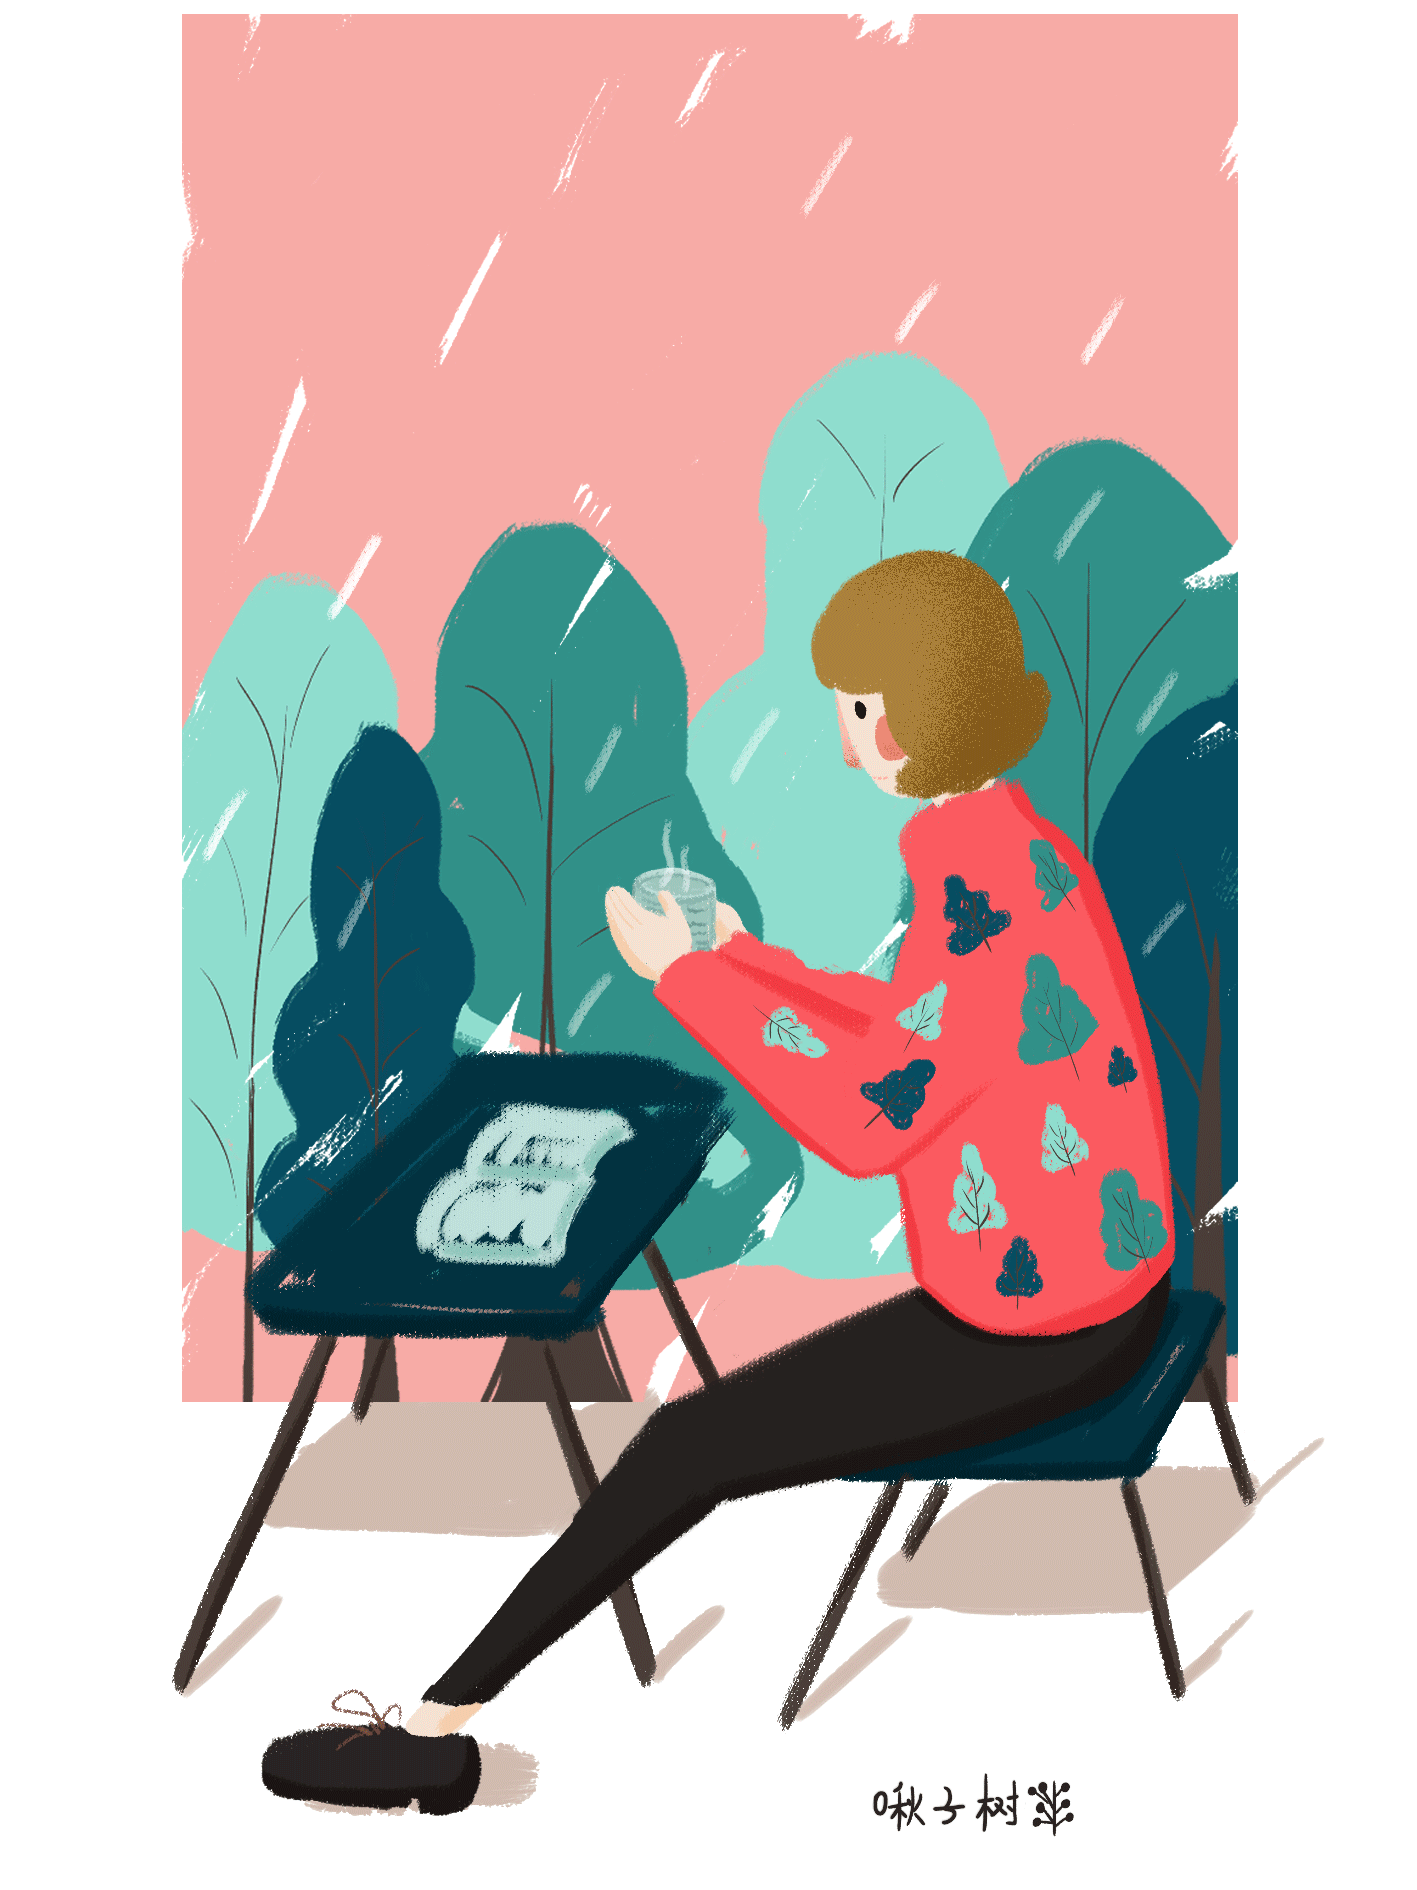 在雨天端着一杯热饮坐在玻璃窗前 桌上是一本自己喜爱的书 惬意而悠闲